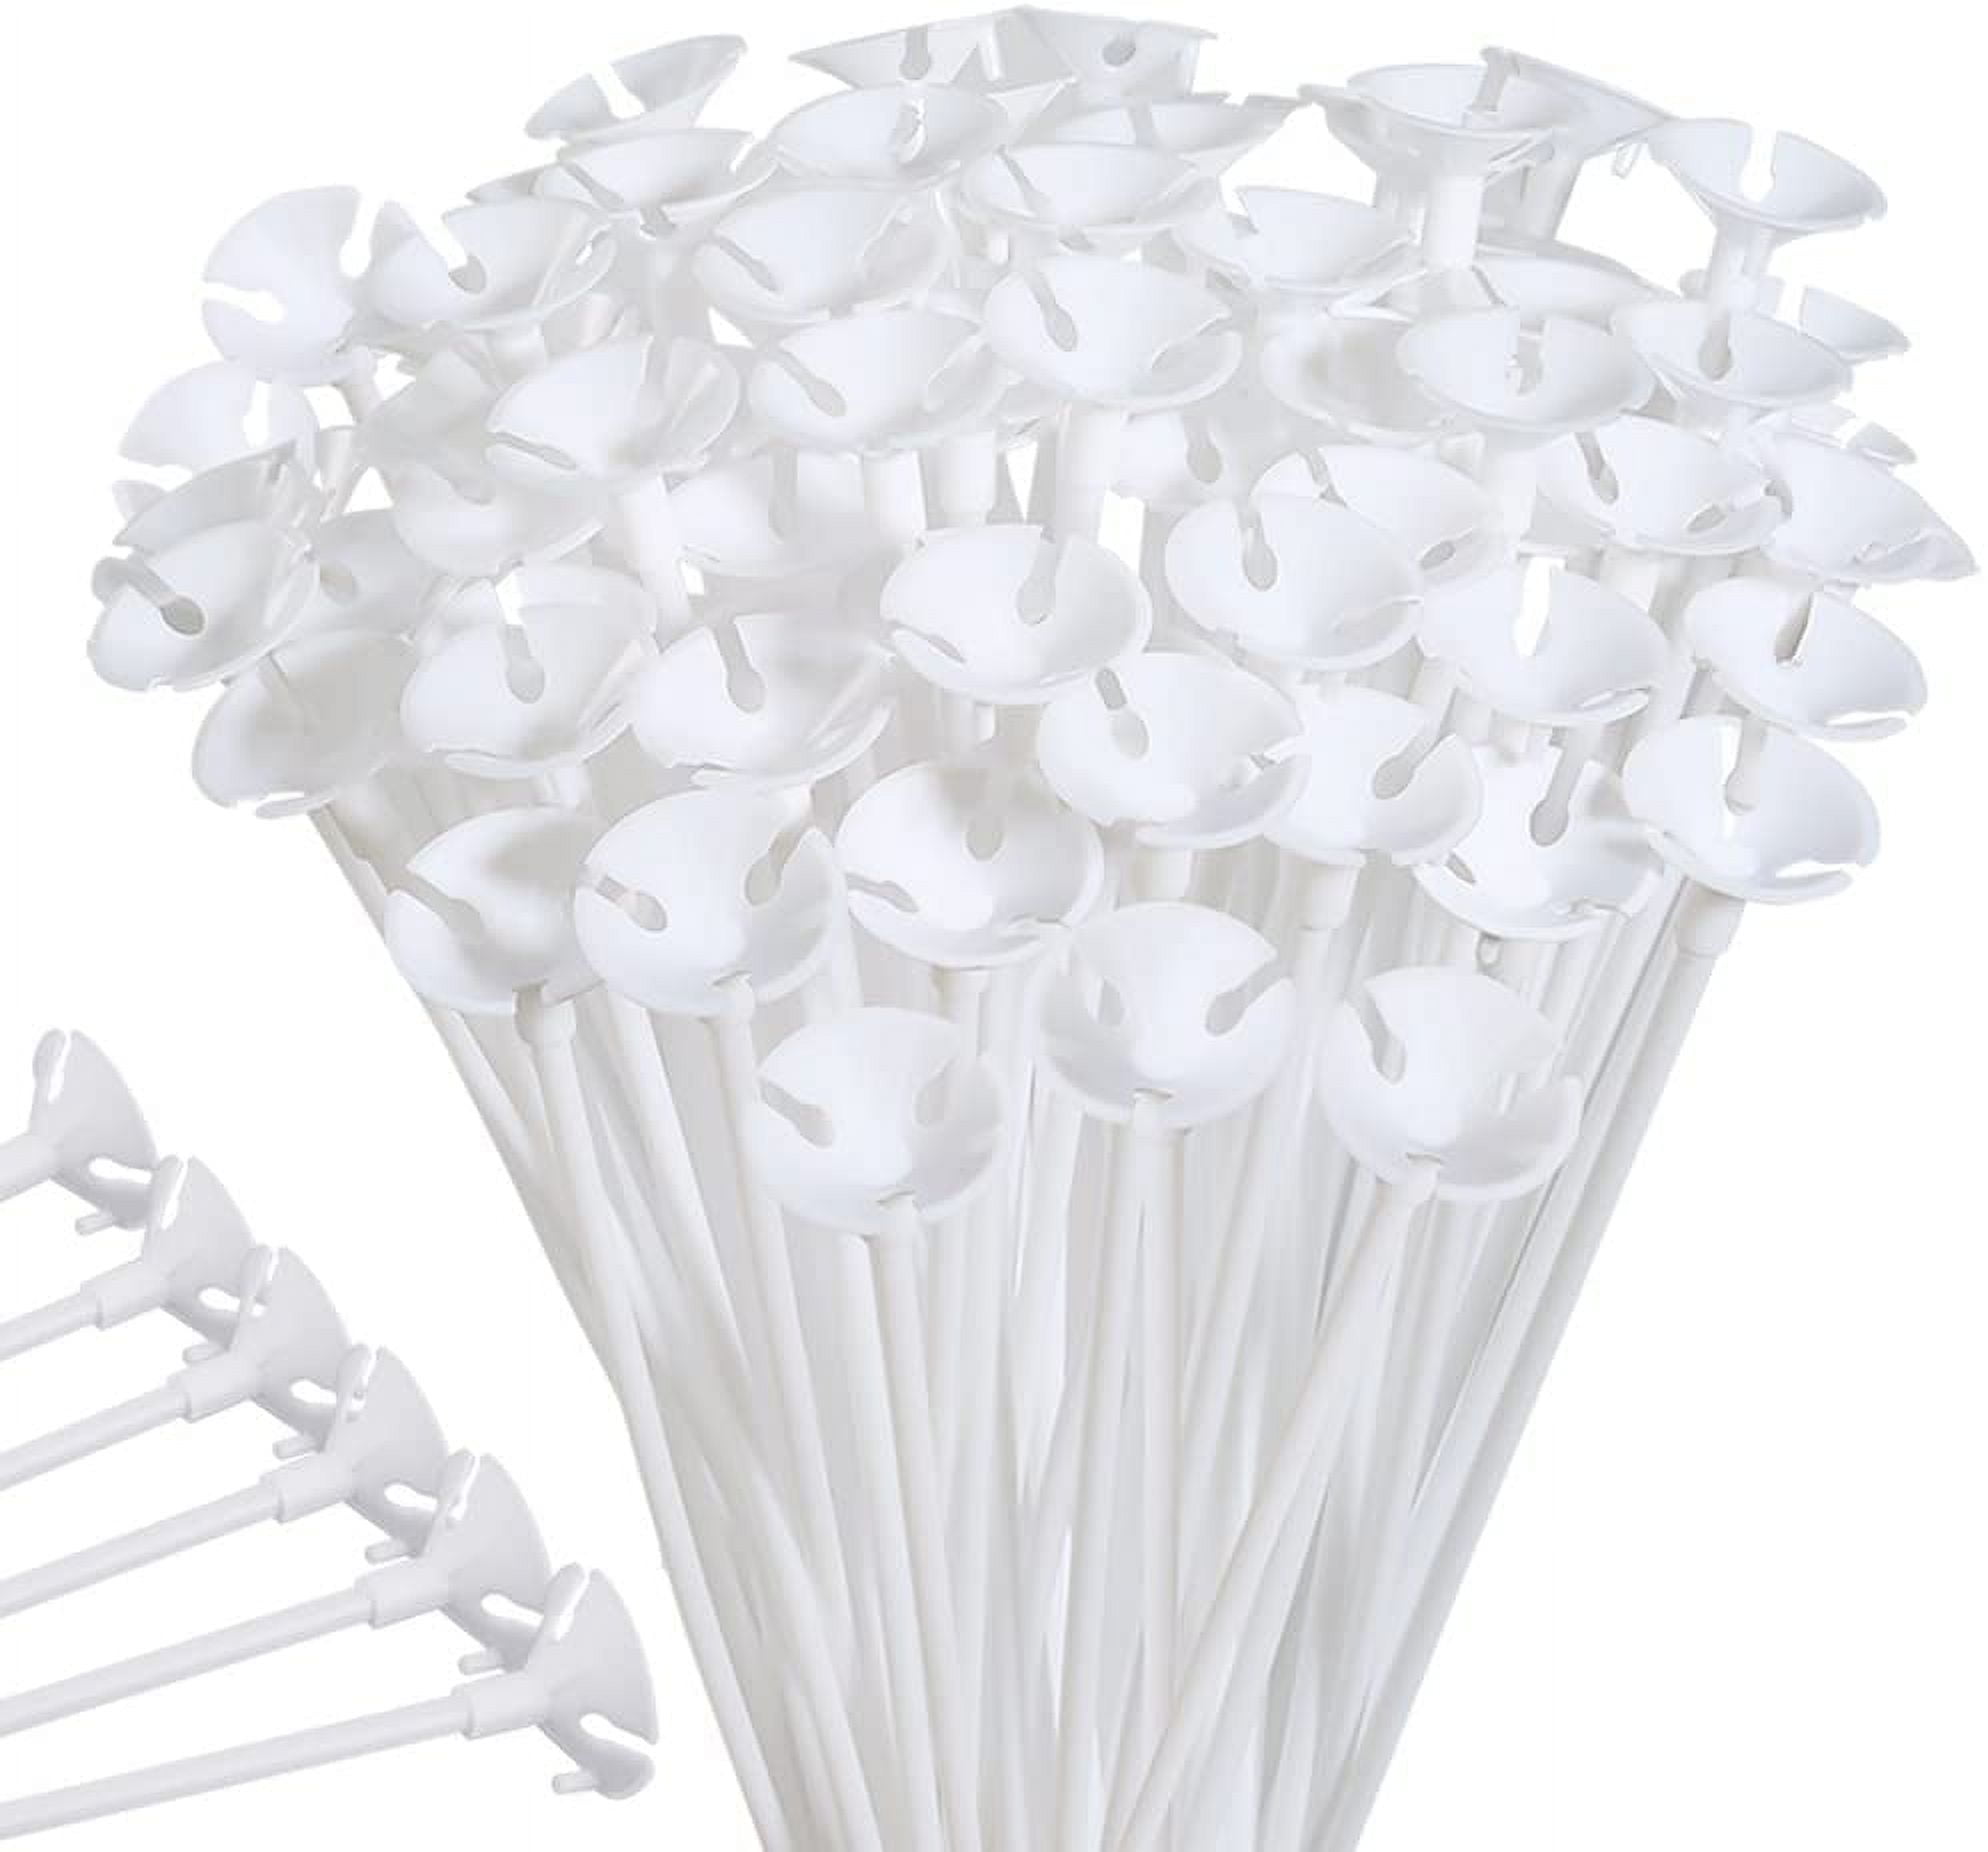 Plastic Balloon Sticks Holder, 24-Inch, 100-Piece